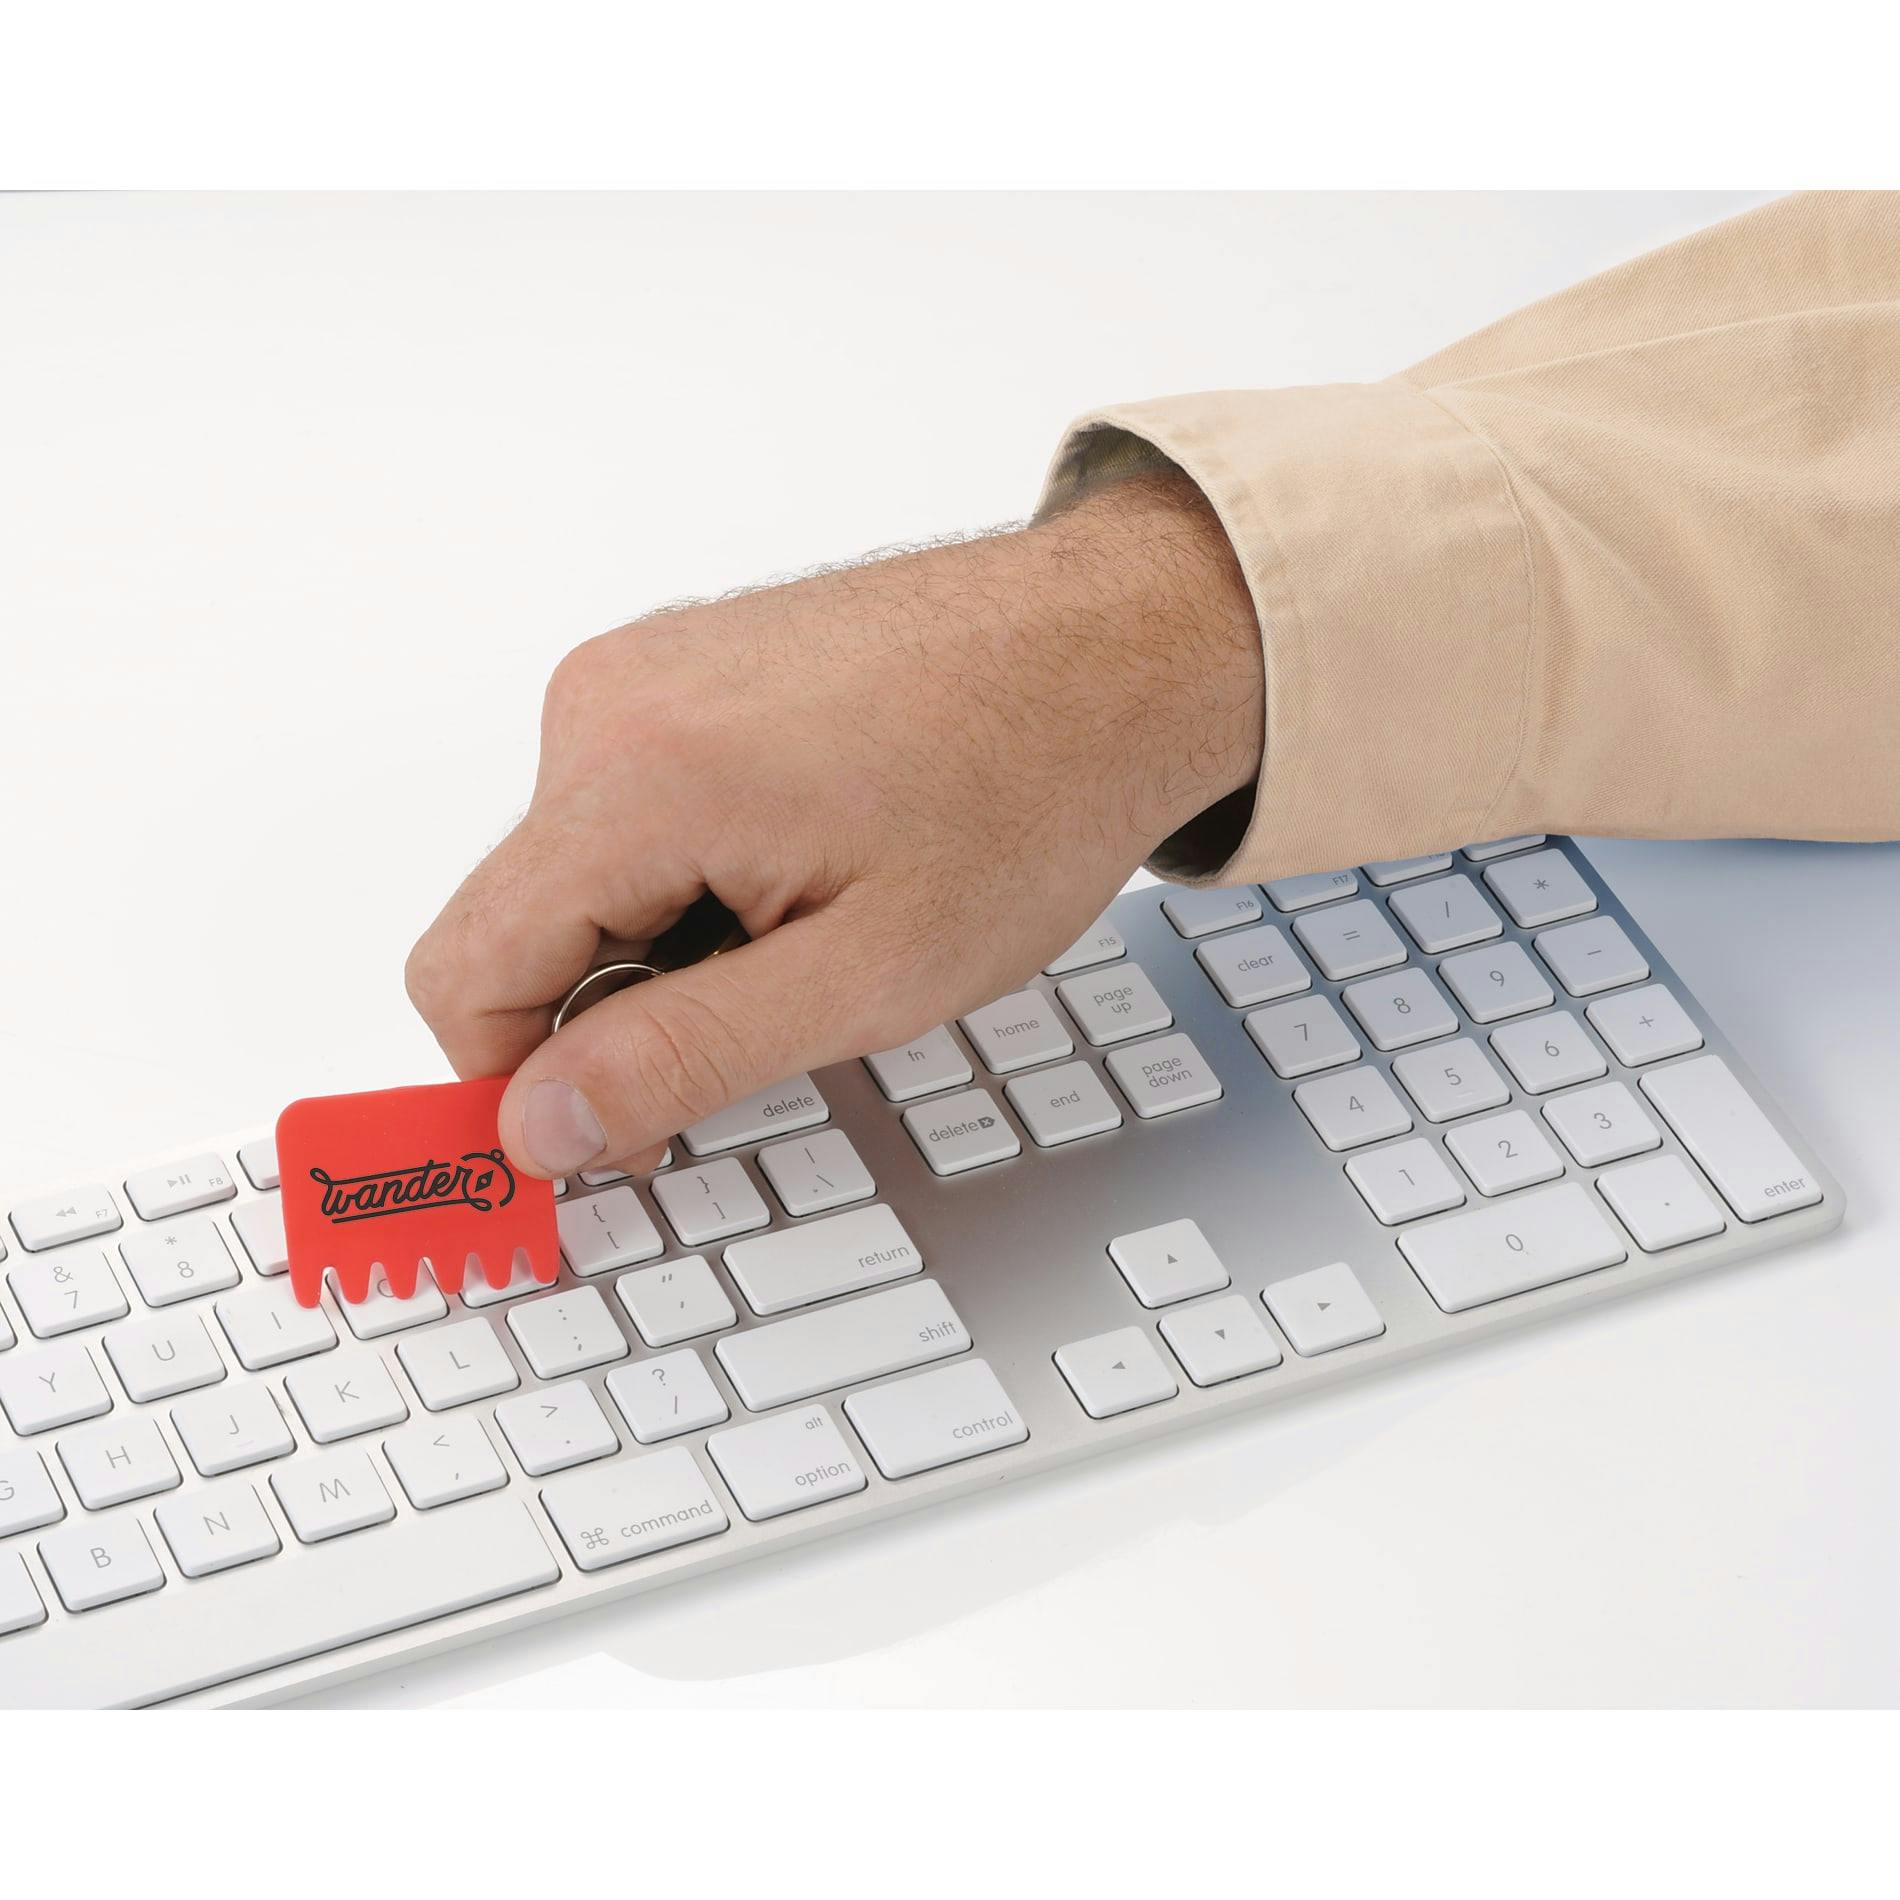 Silicone Keyboard Brush Key Ring - additional Image 2